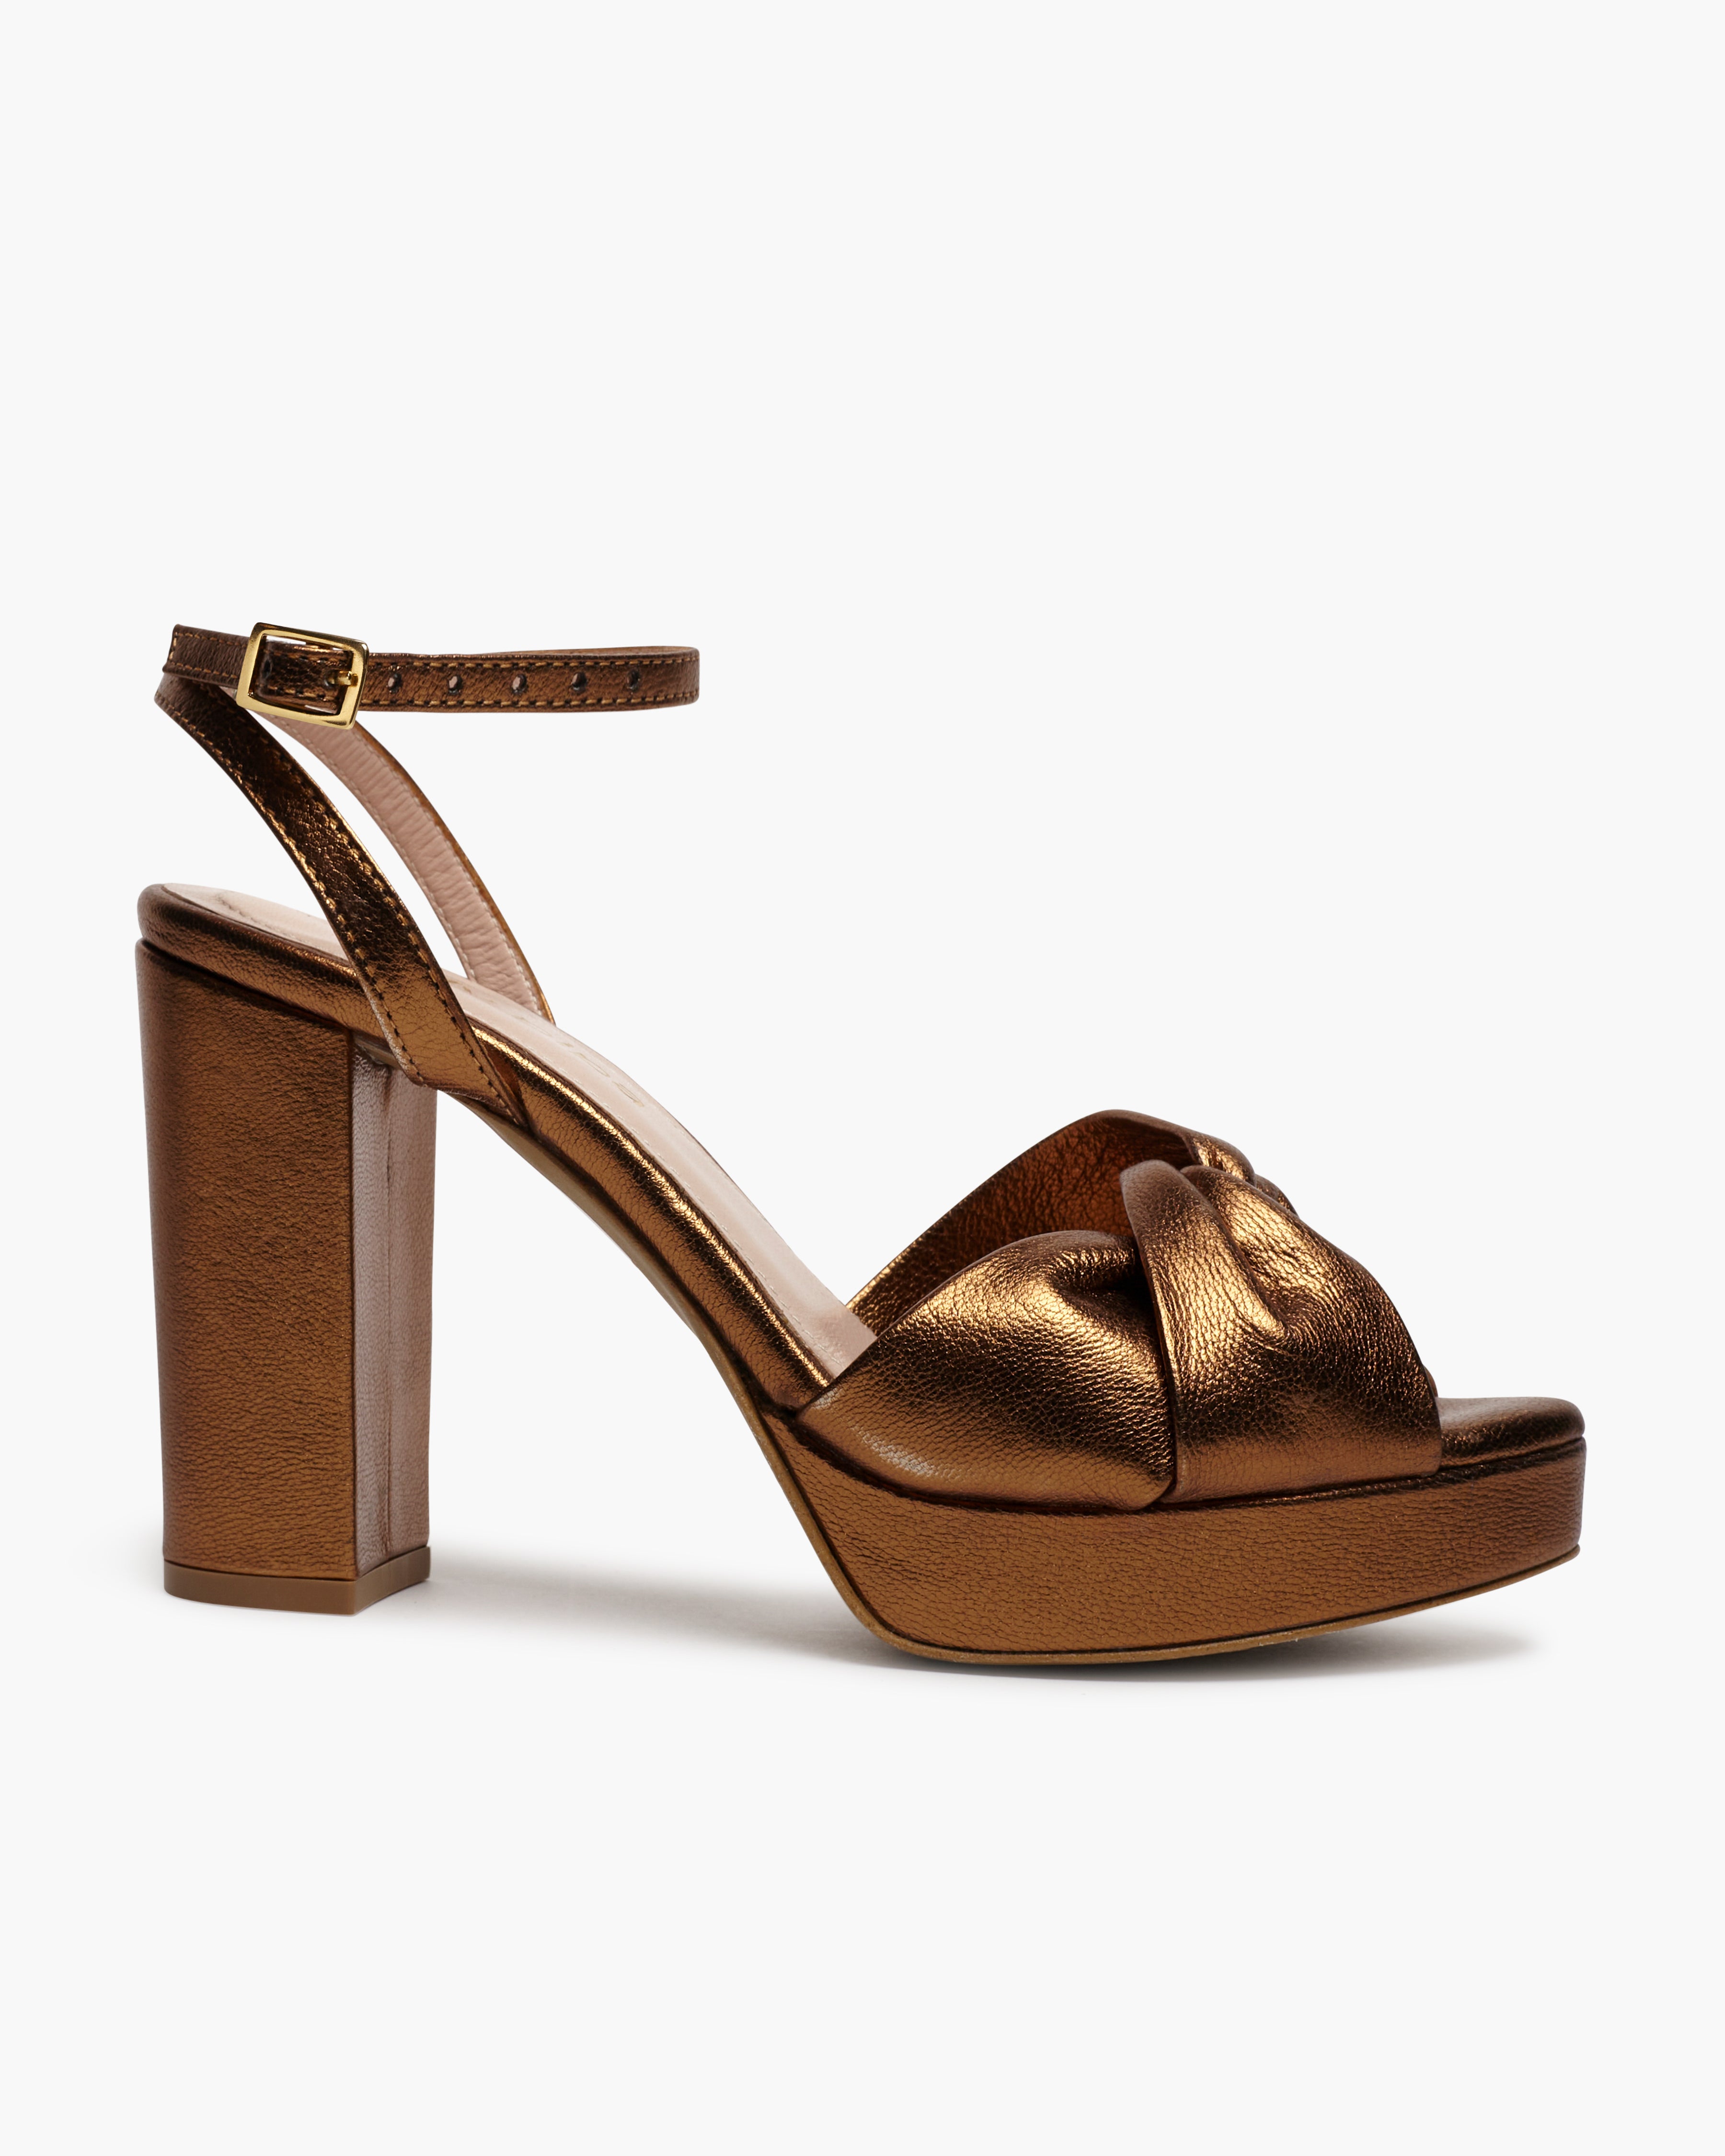 Georgia Copper Sandals